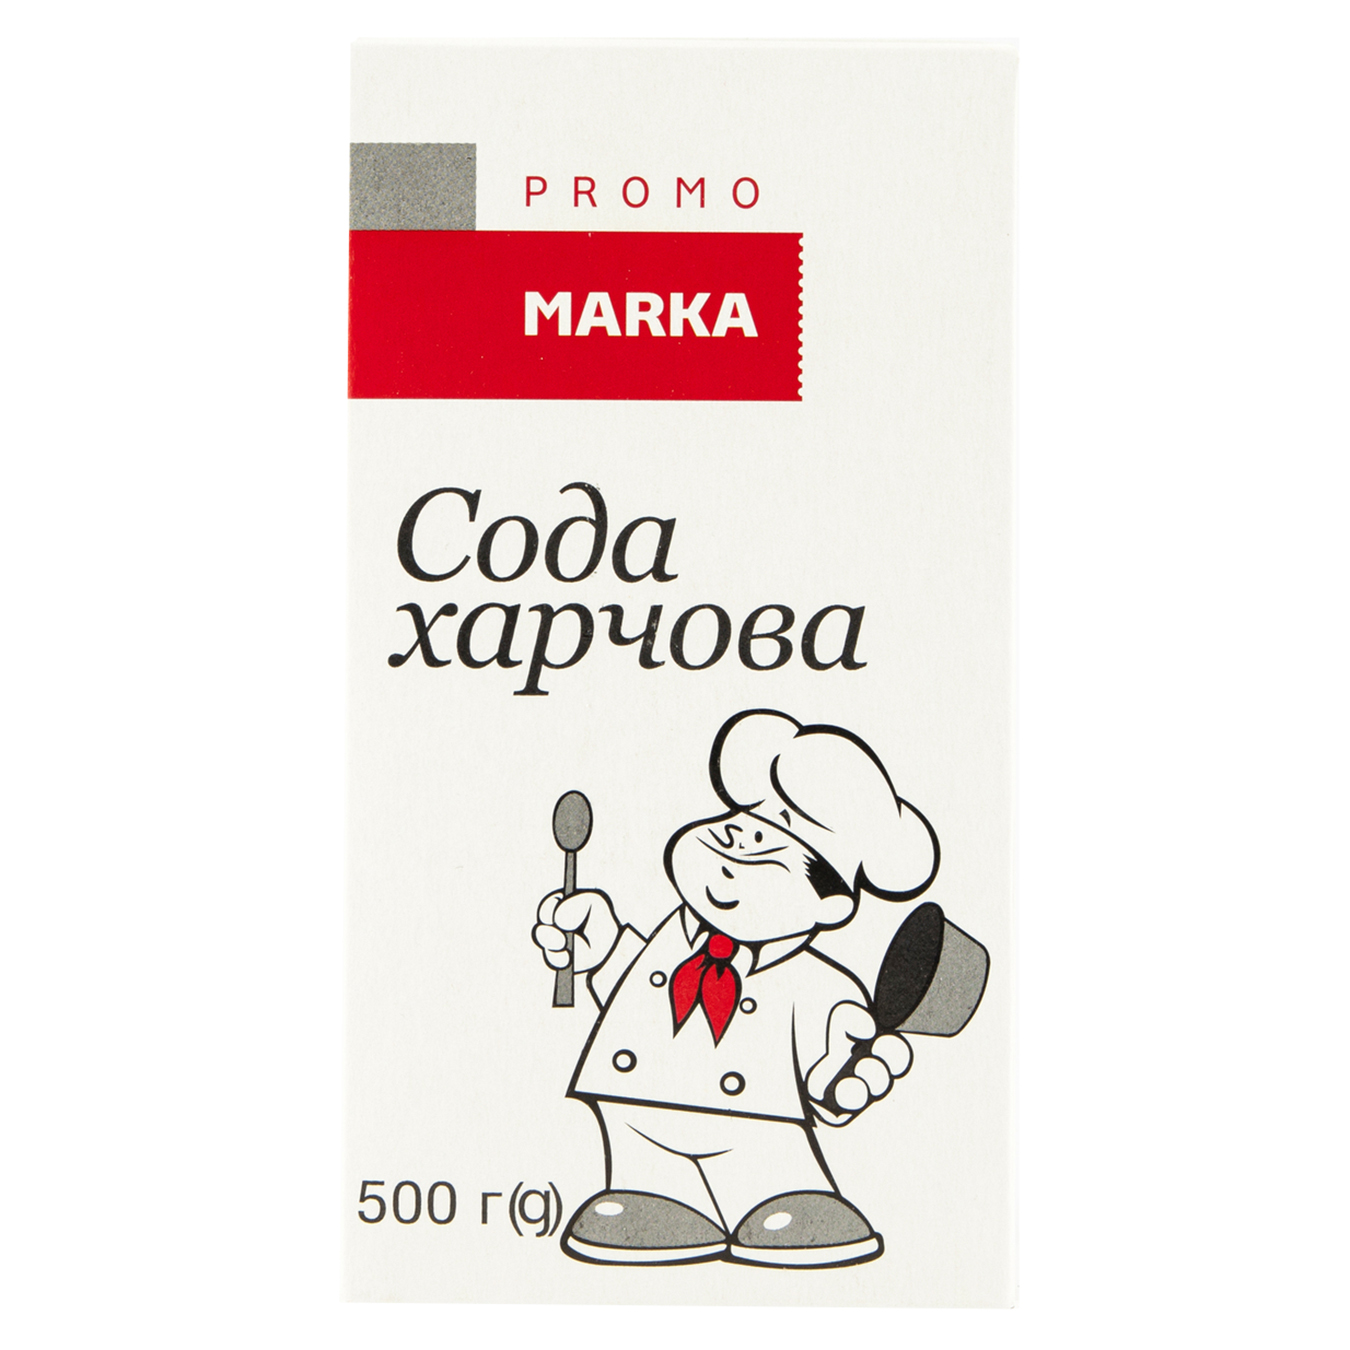 Baking soda Marka Promo cardboard 500g